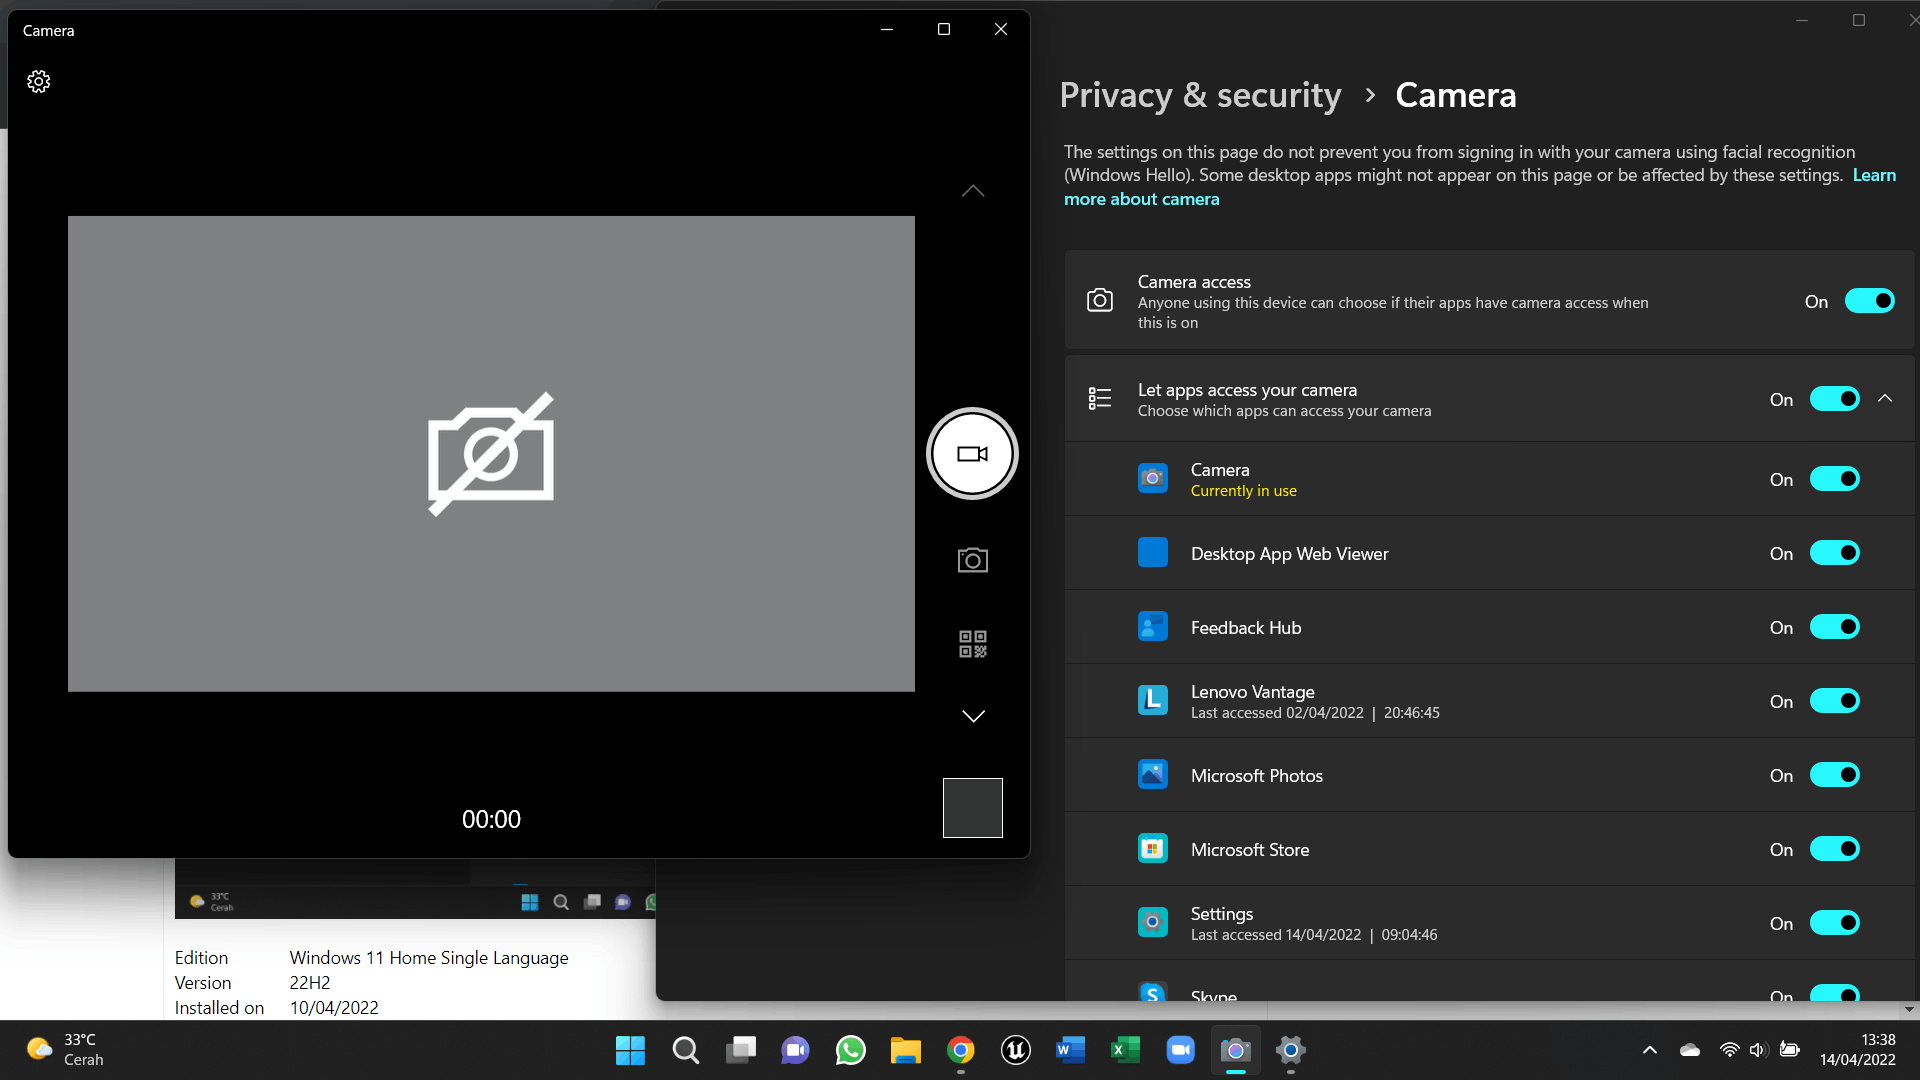 Meine Kamera funktioniert nicht mit dem neuesten Windows 11-Update, wie kann ich das beheben?